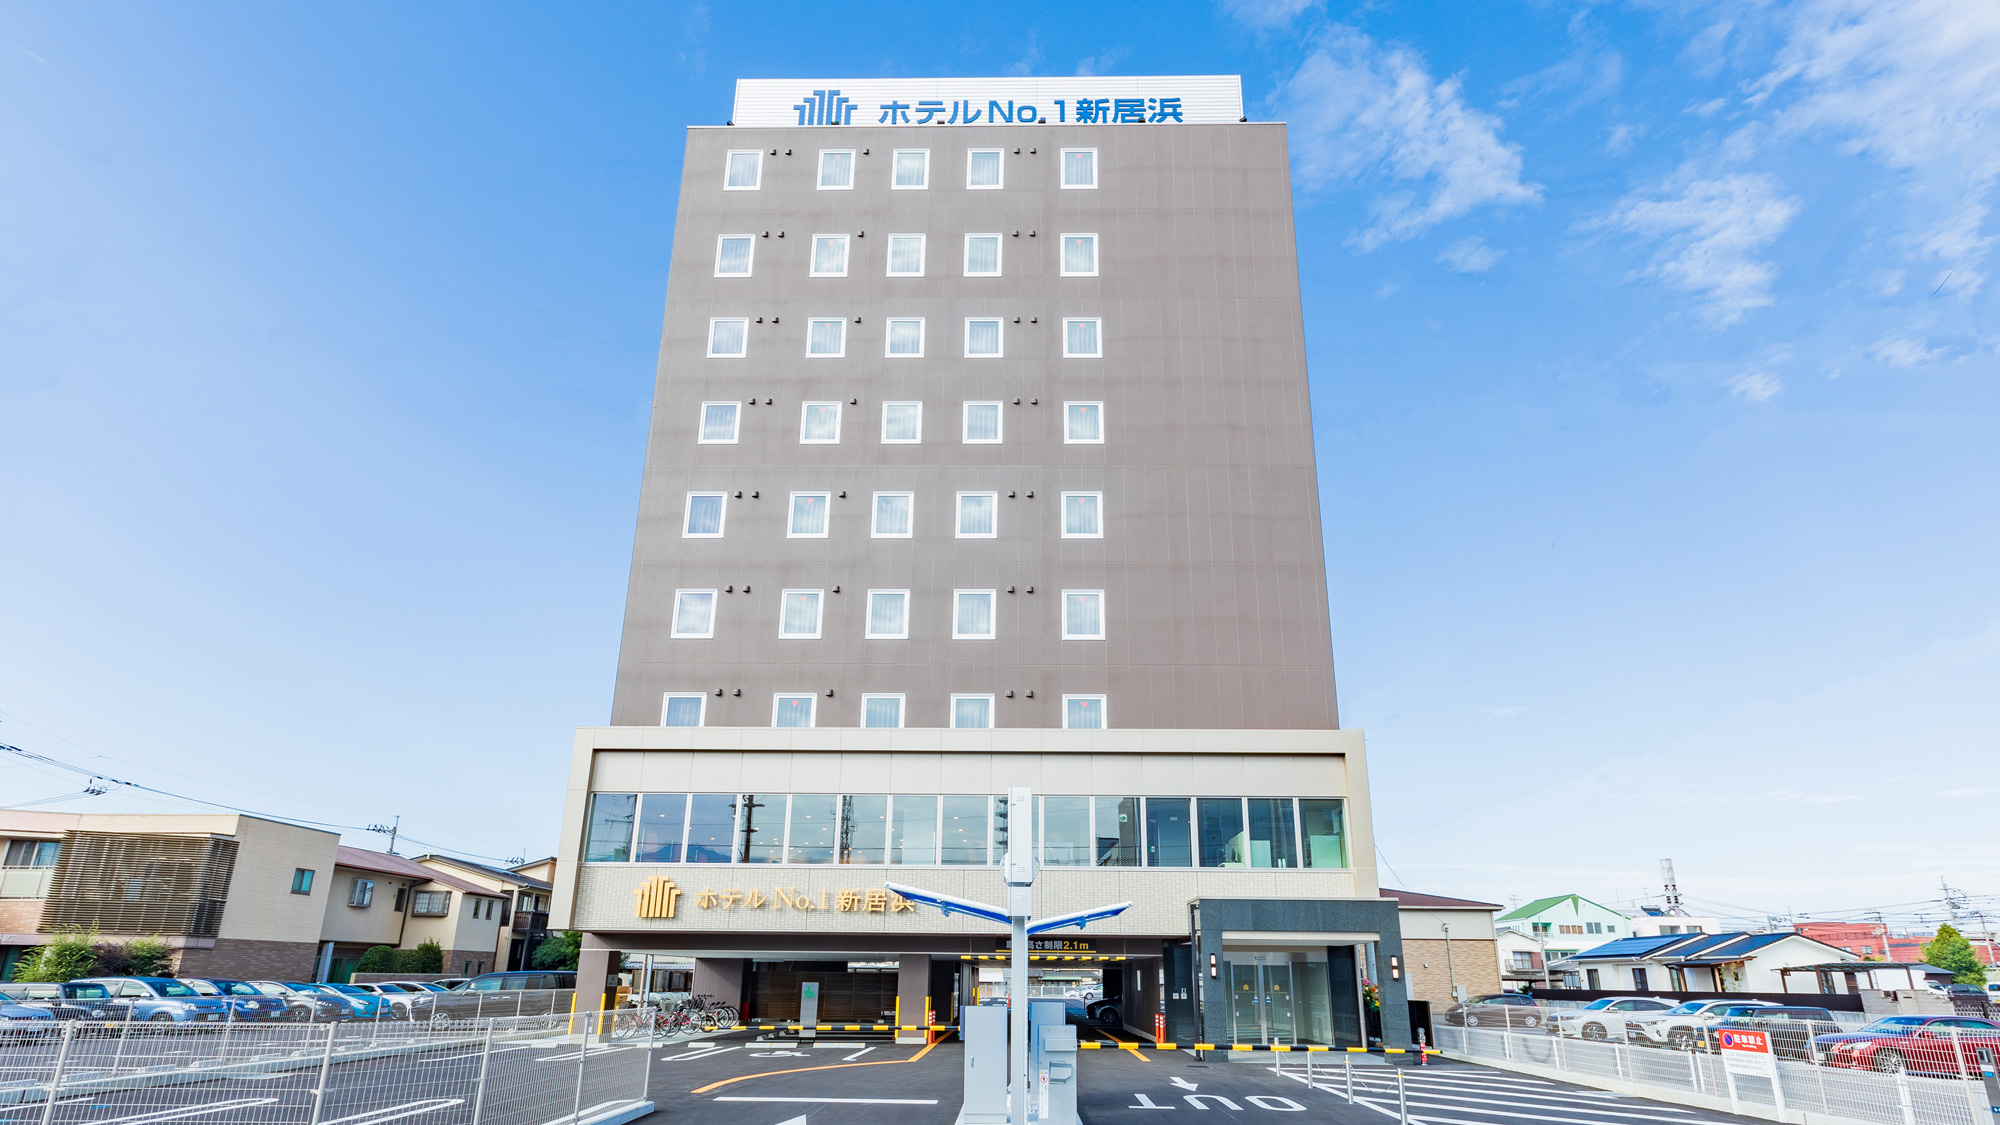 호텔 No.1 니이하마